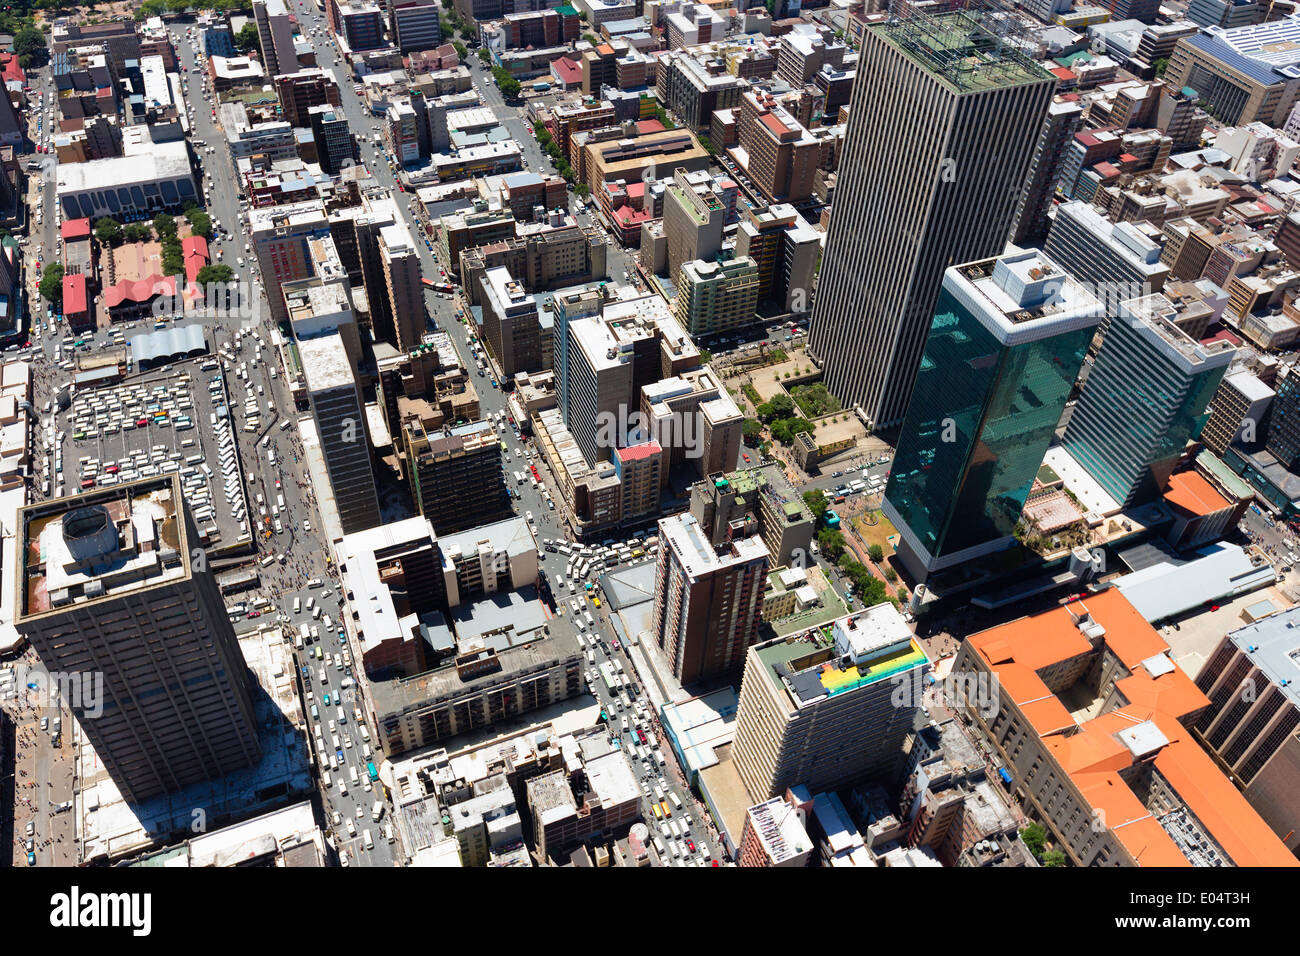 Vista aérea de Jeppe Street, el distrito central de negocios de Johannesburgo, con el rascacielos torres de mármol Sanlan edificio central. Foto de stock